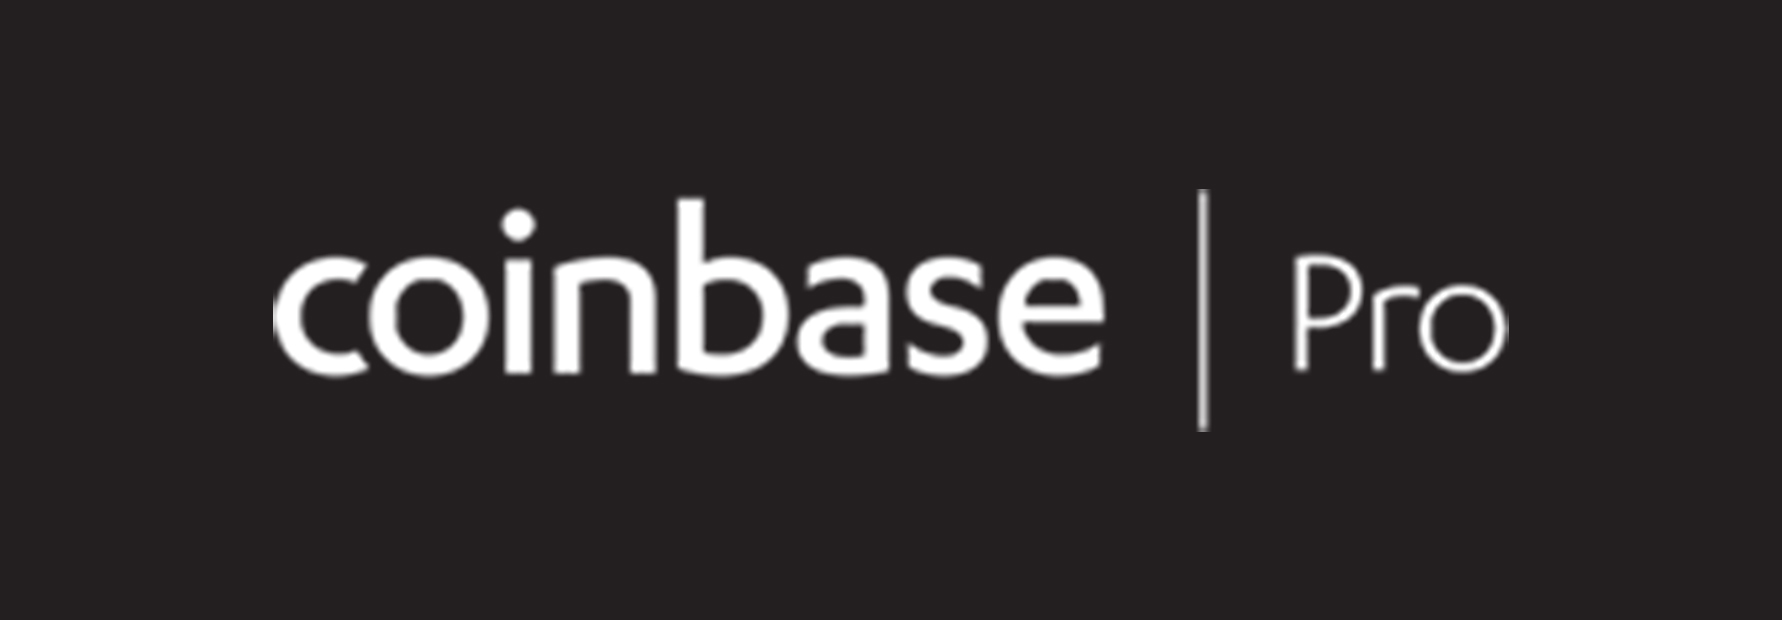 coinbase_pro-logo.jpg